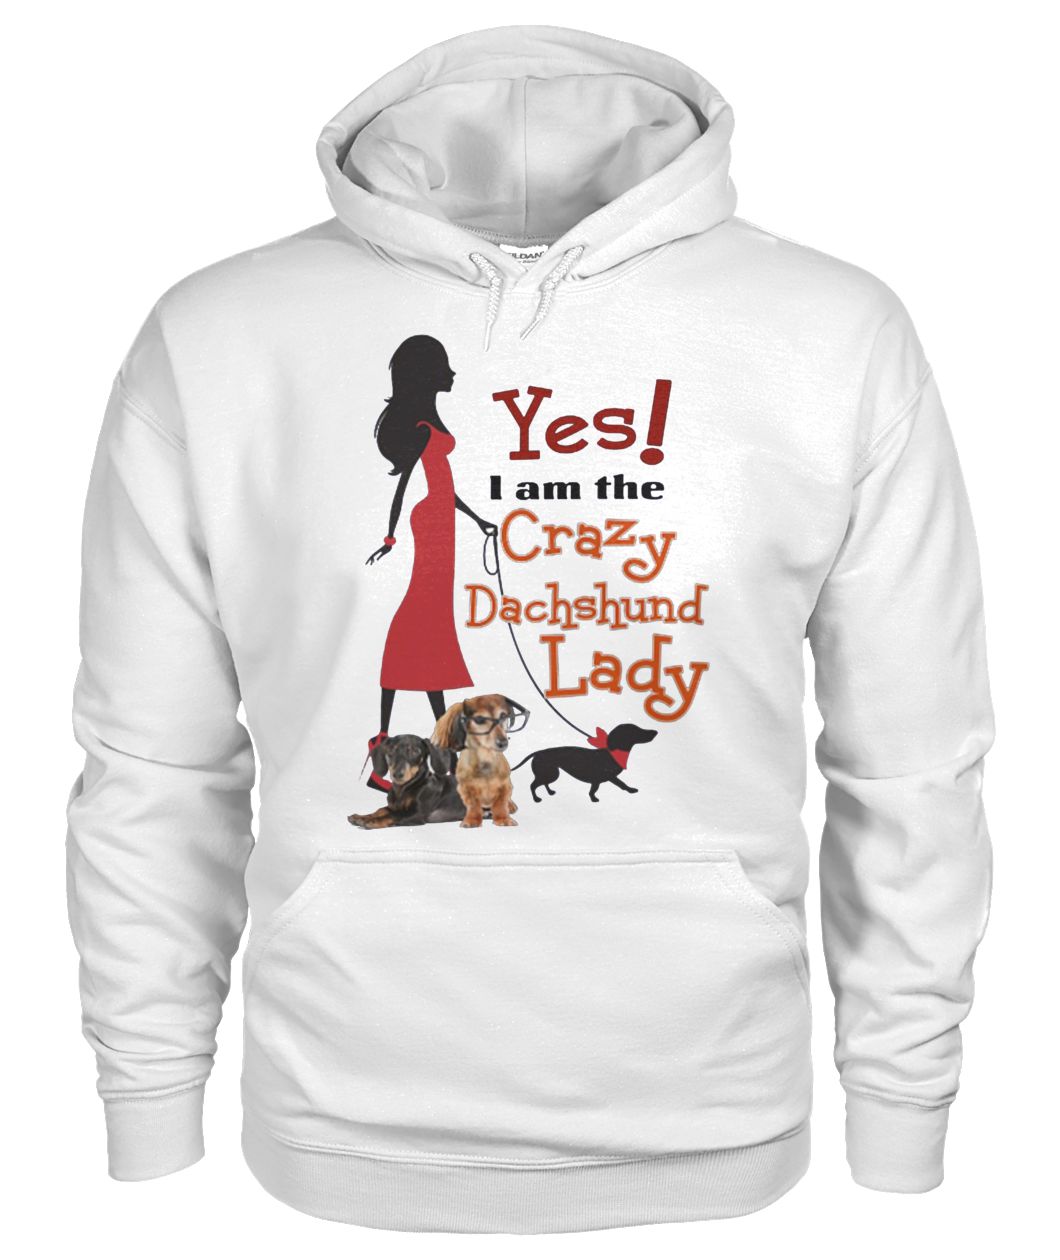 Yes I'm crazy dachshund lady gildan hoodie